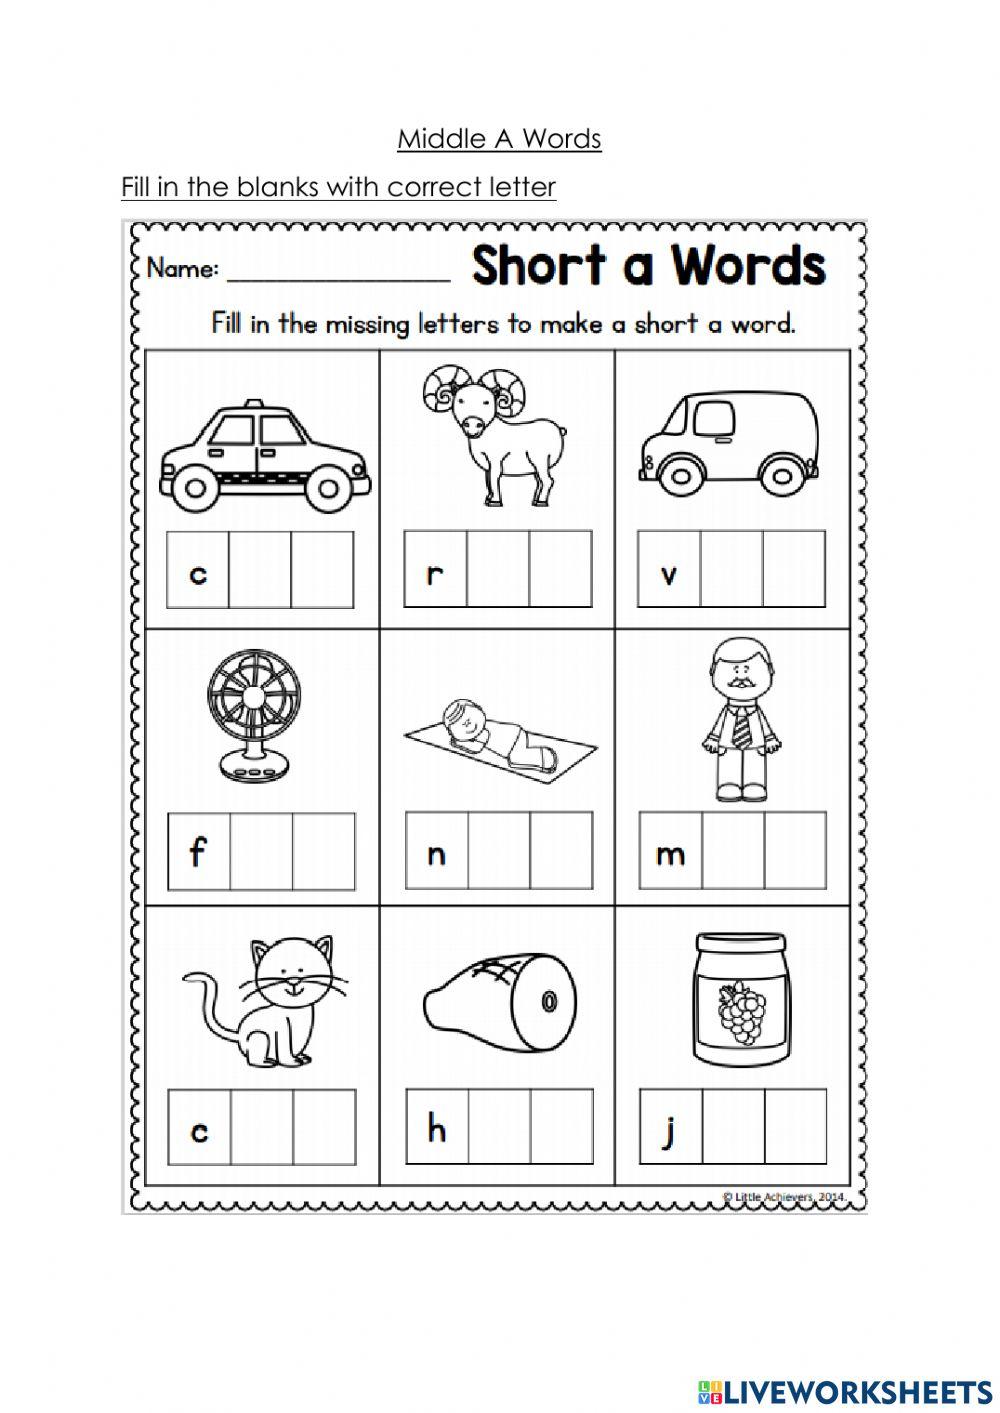 Middle A words worksheet worksheet | Live Worksheets